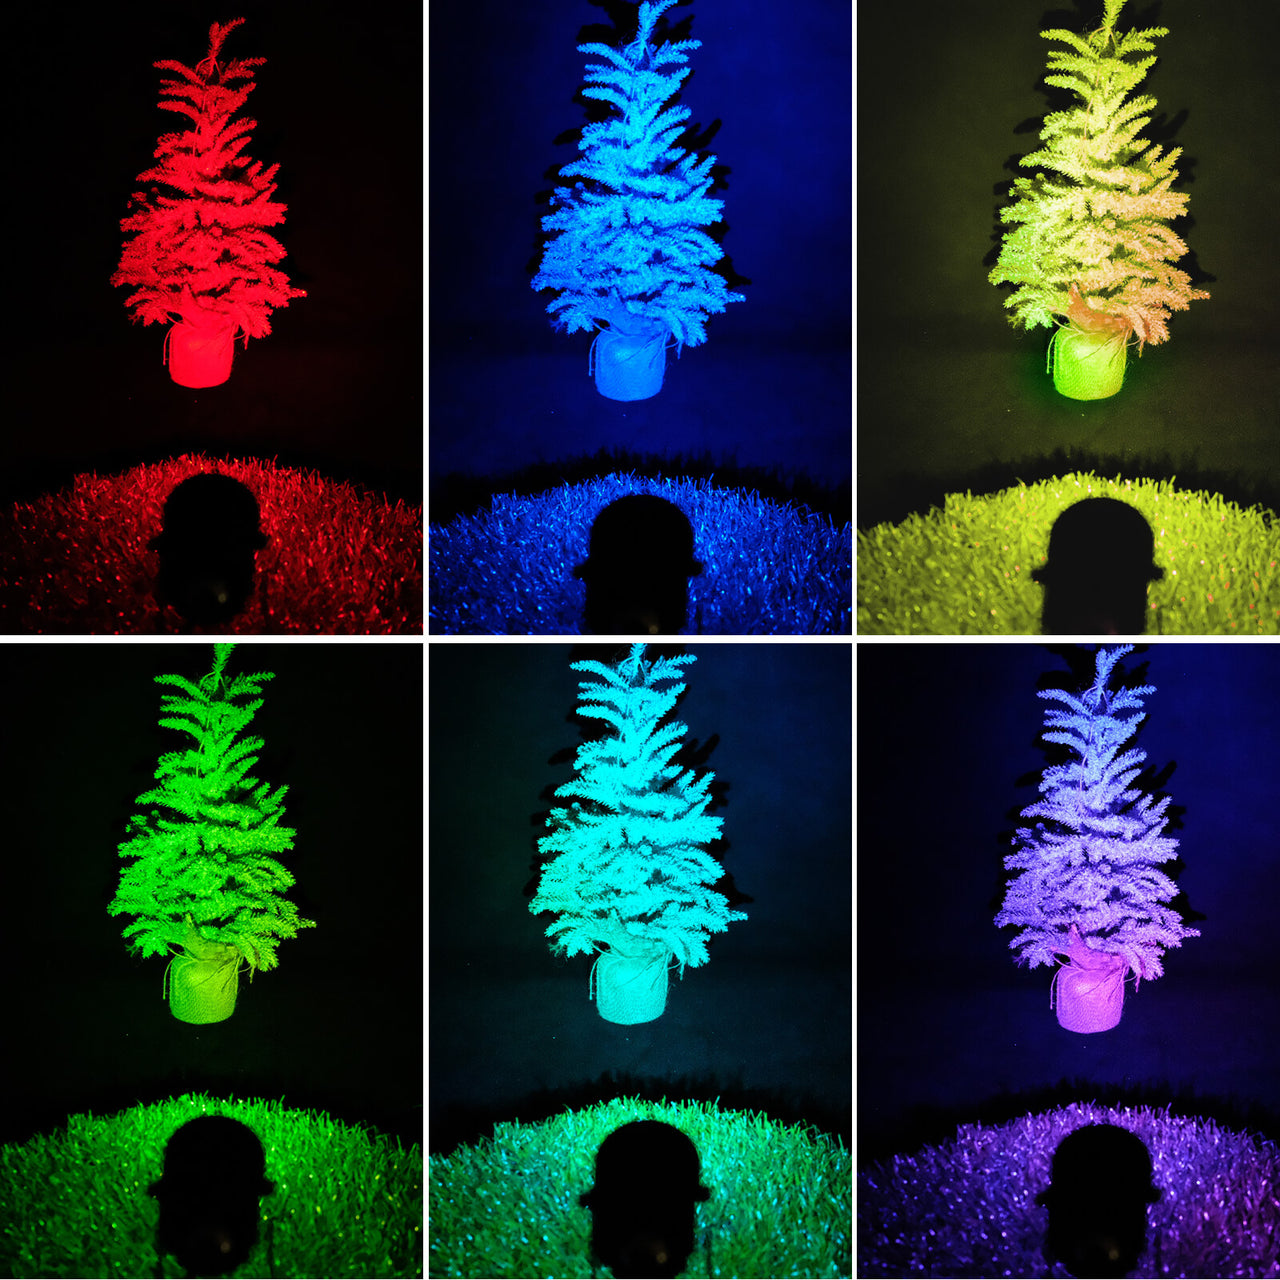 Colorful lights on display